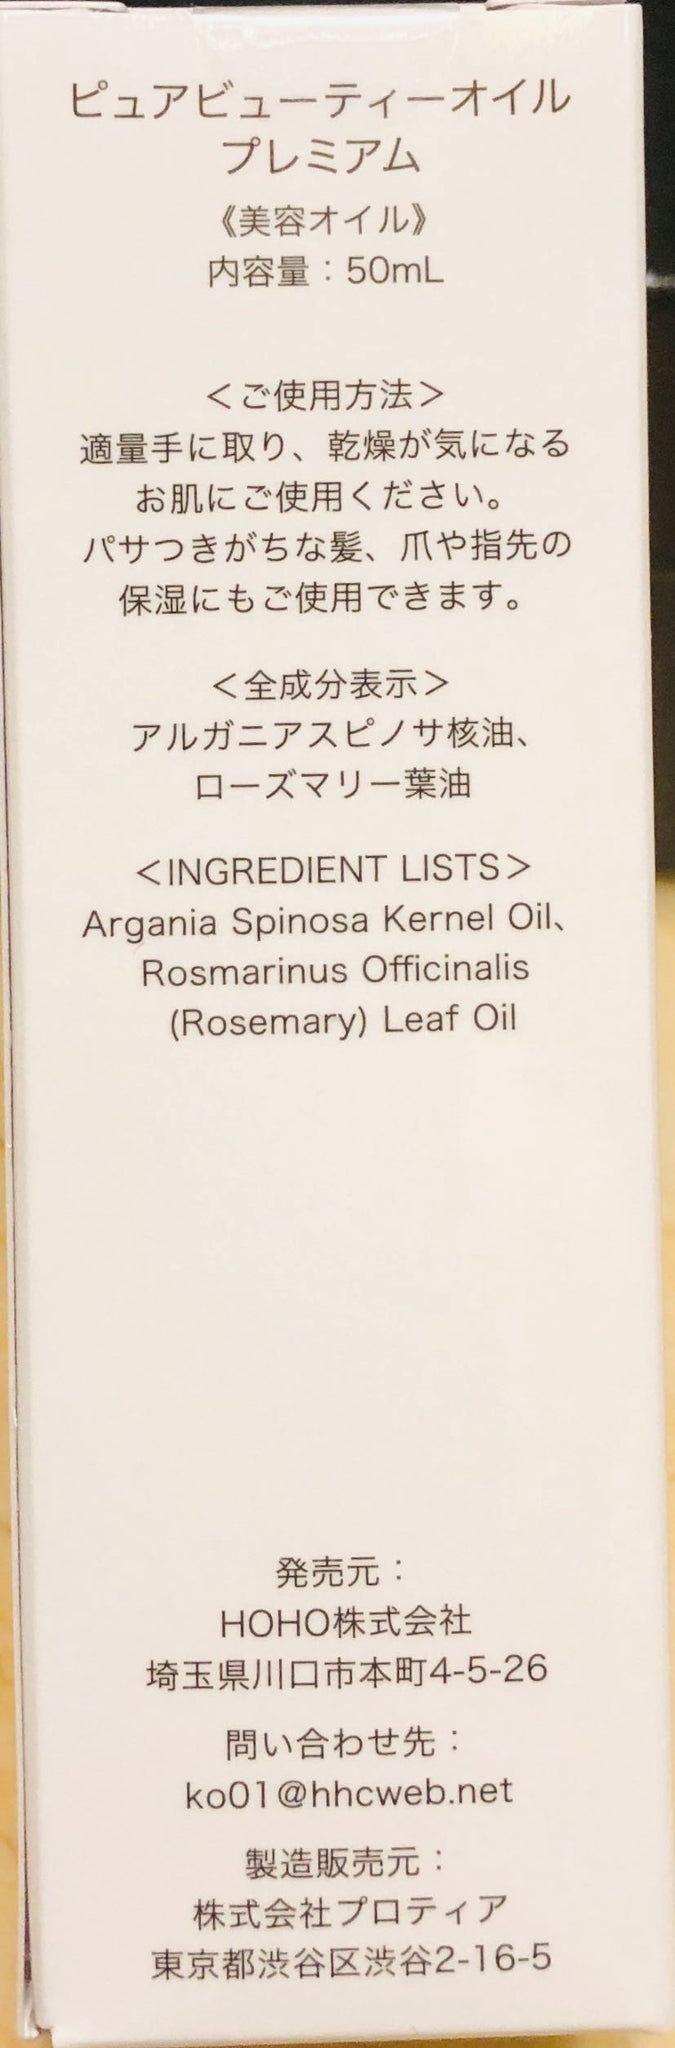 八念堂Ⓡ 最高級純油アルガンオイル プレミアム50ml(化粧用)